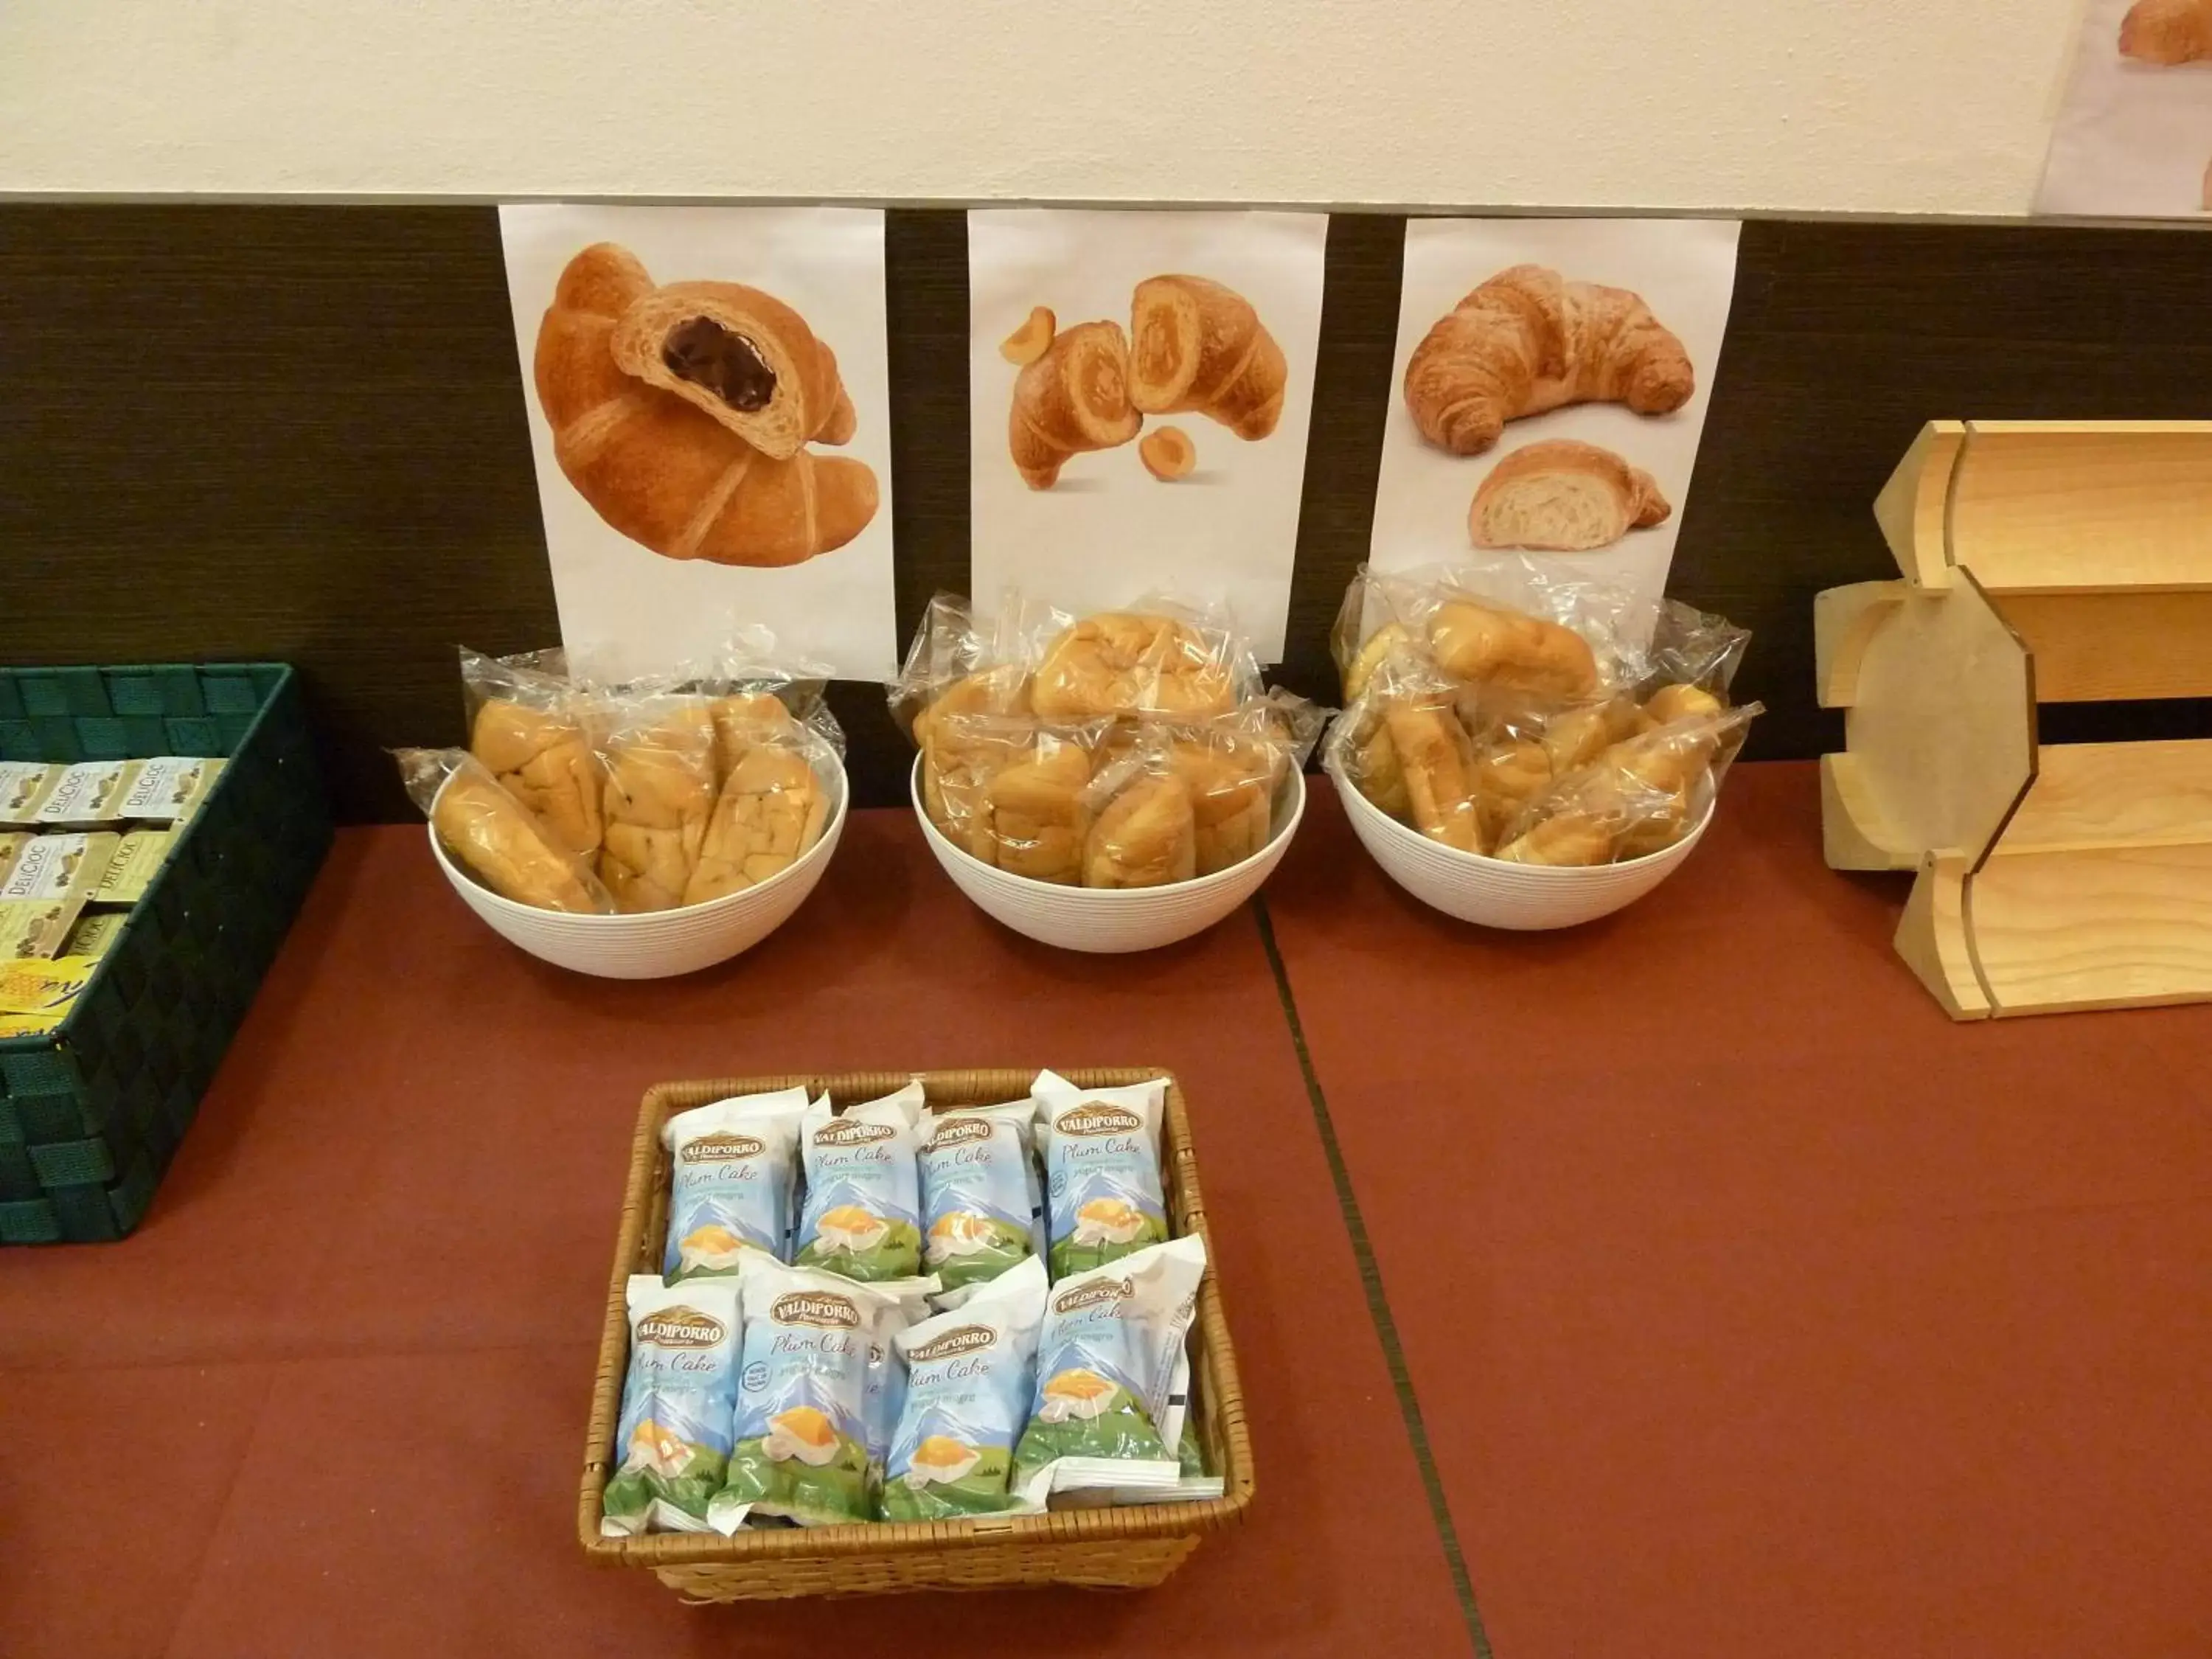 Buffet breakfast in Hotel Fiera